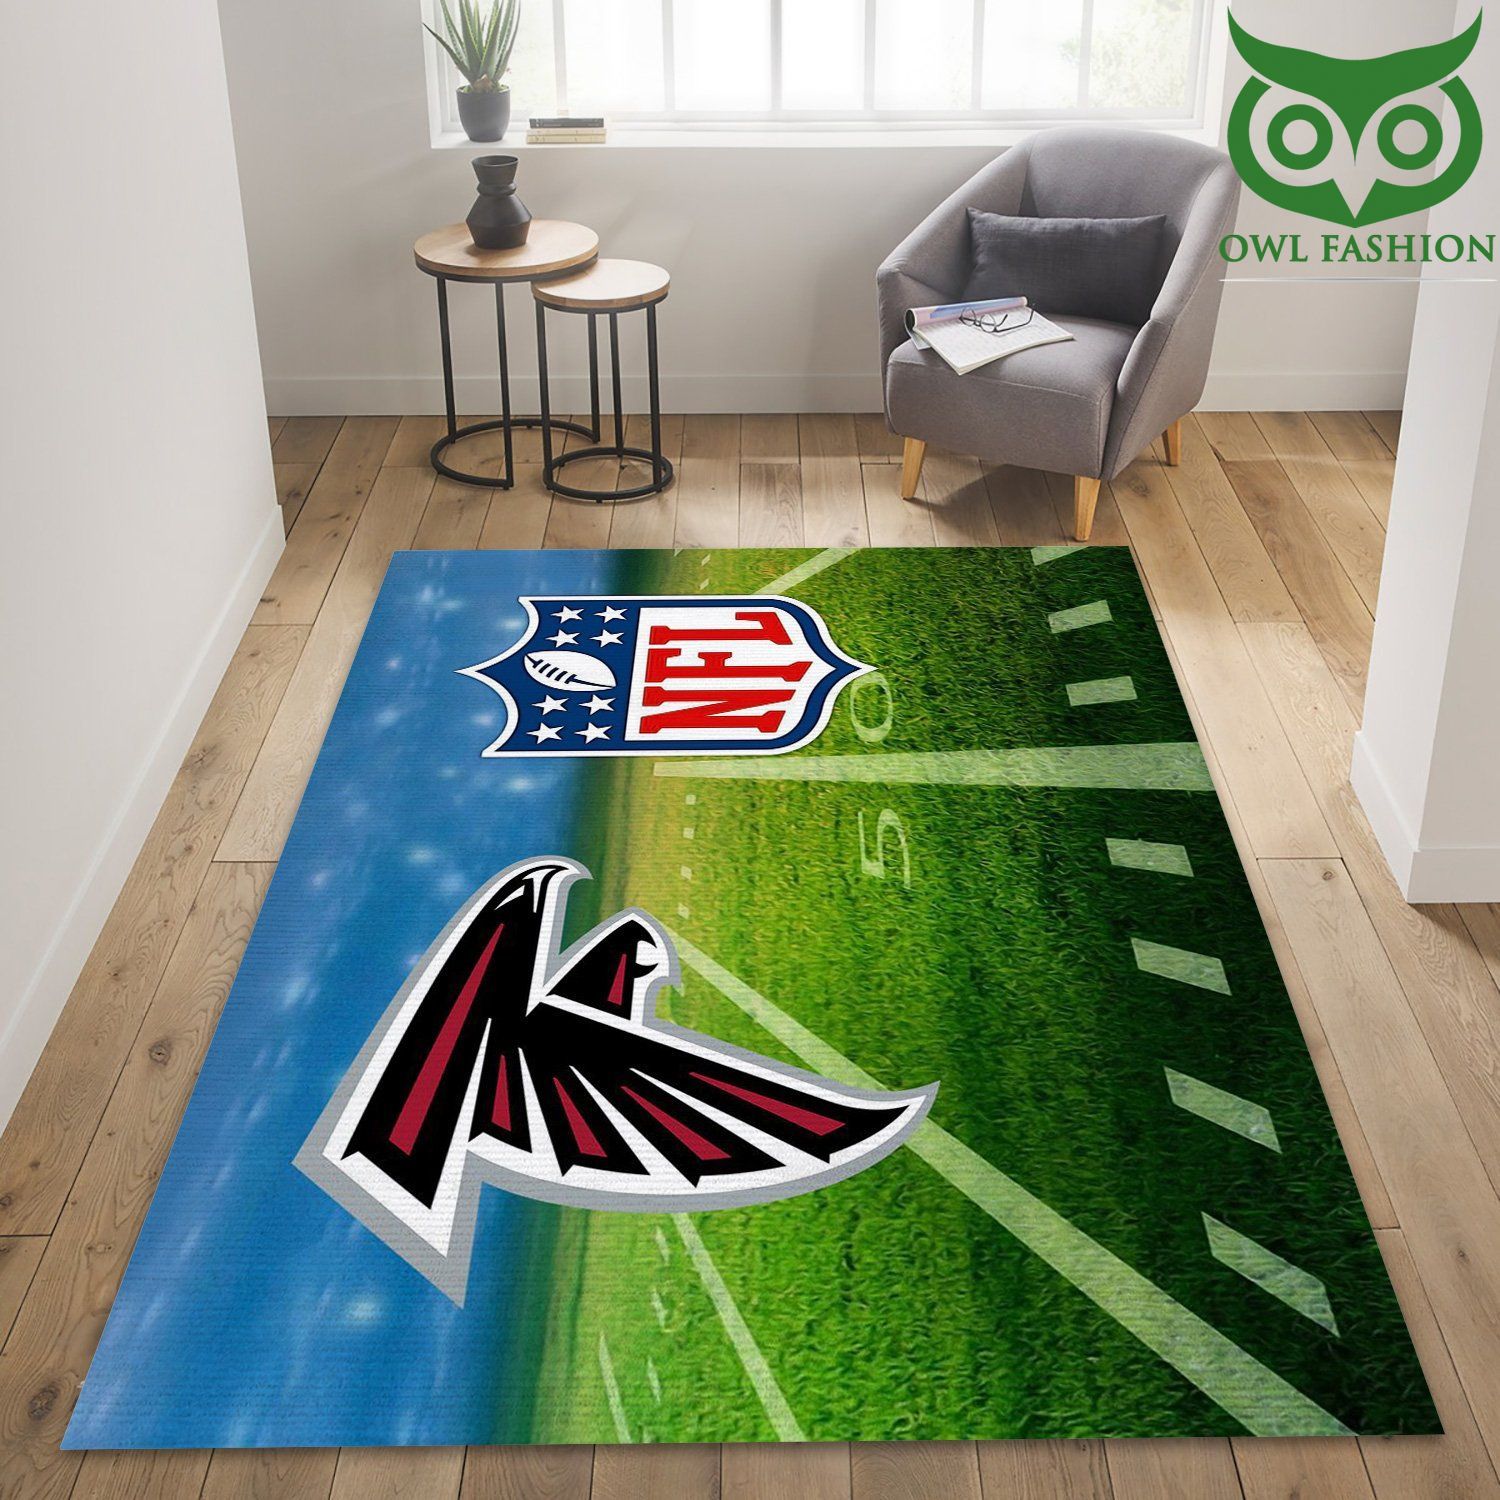 Atlanta Falcons Nfl Rug Carpet Rug 